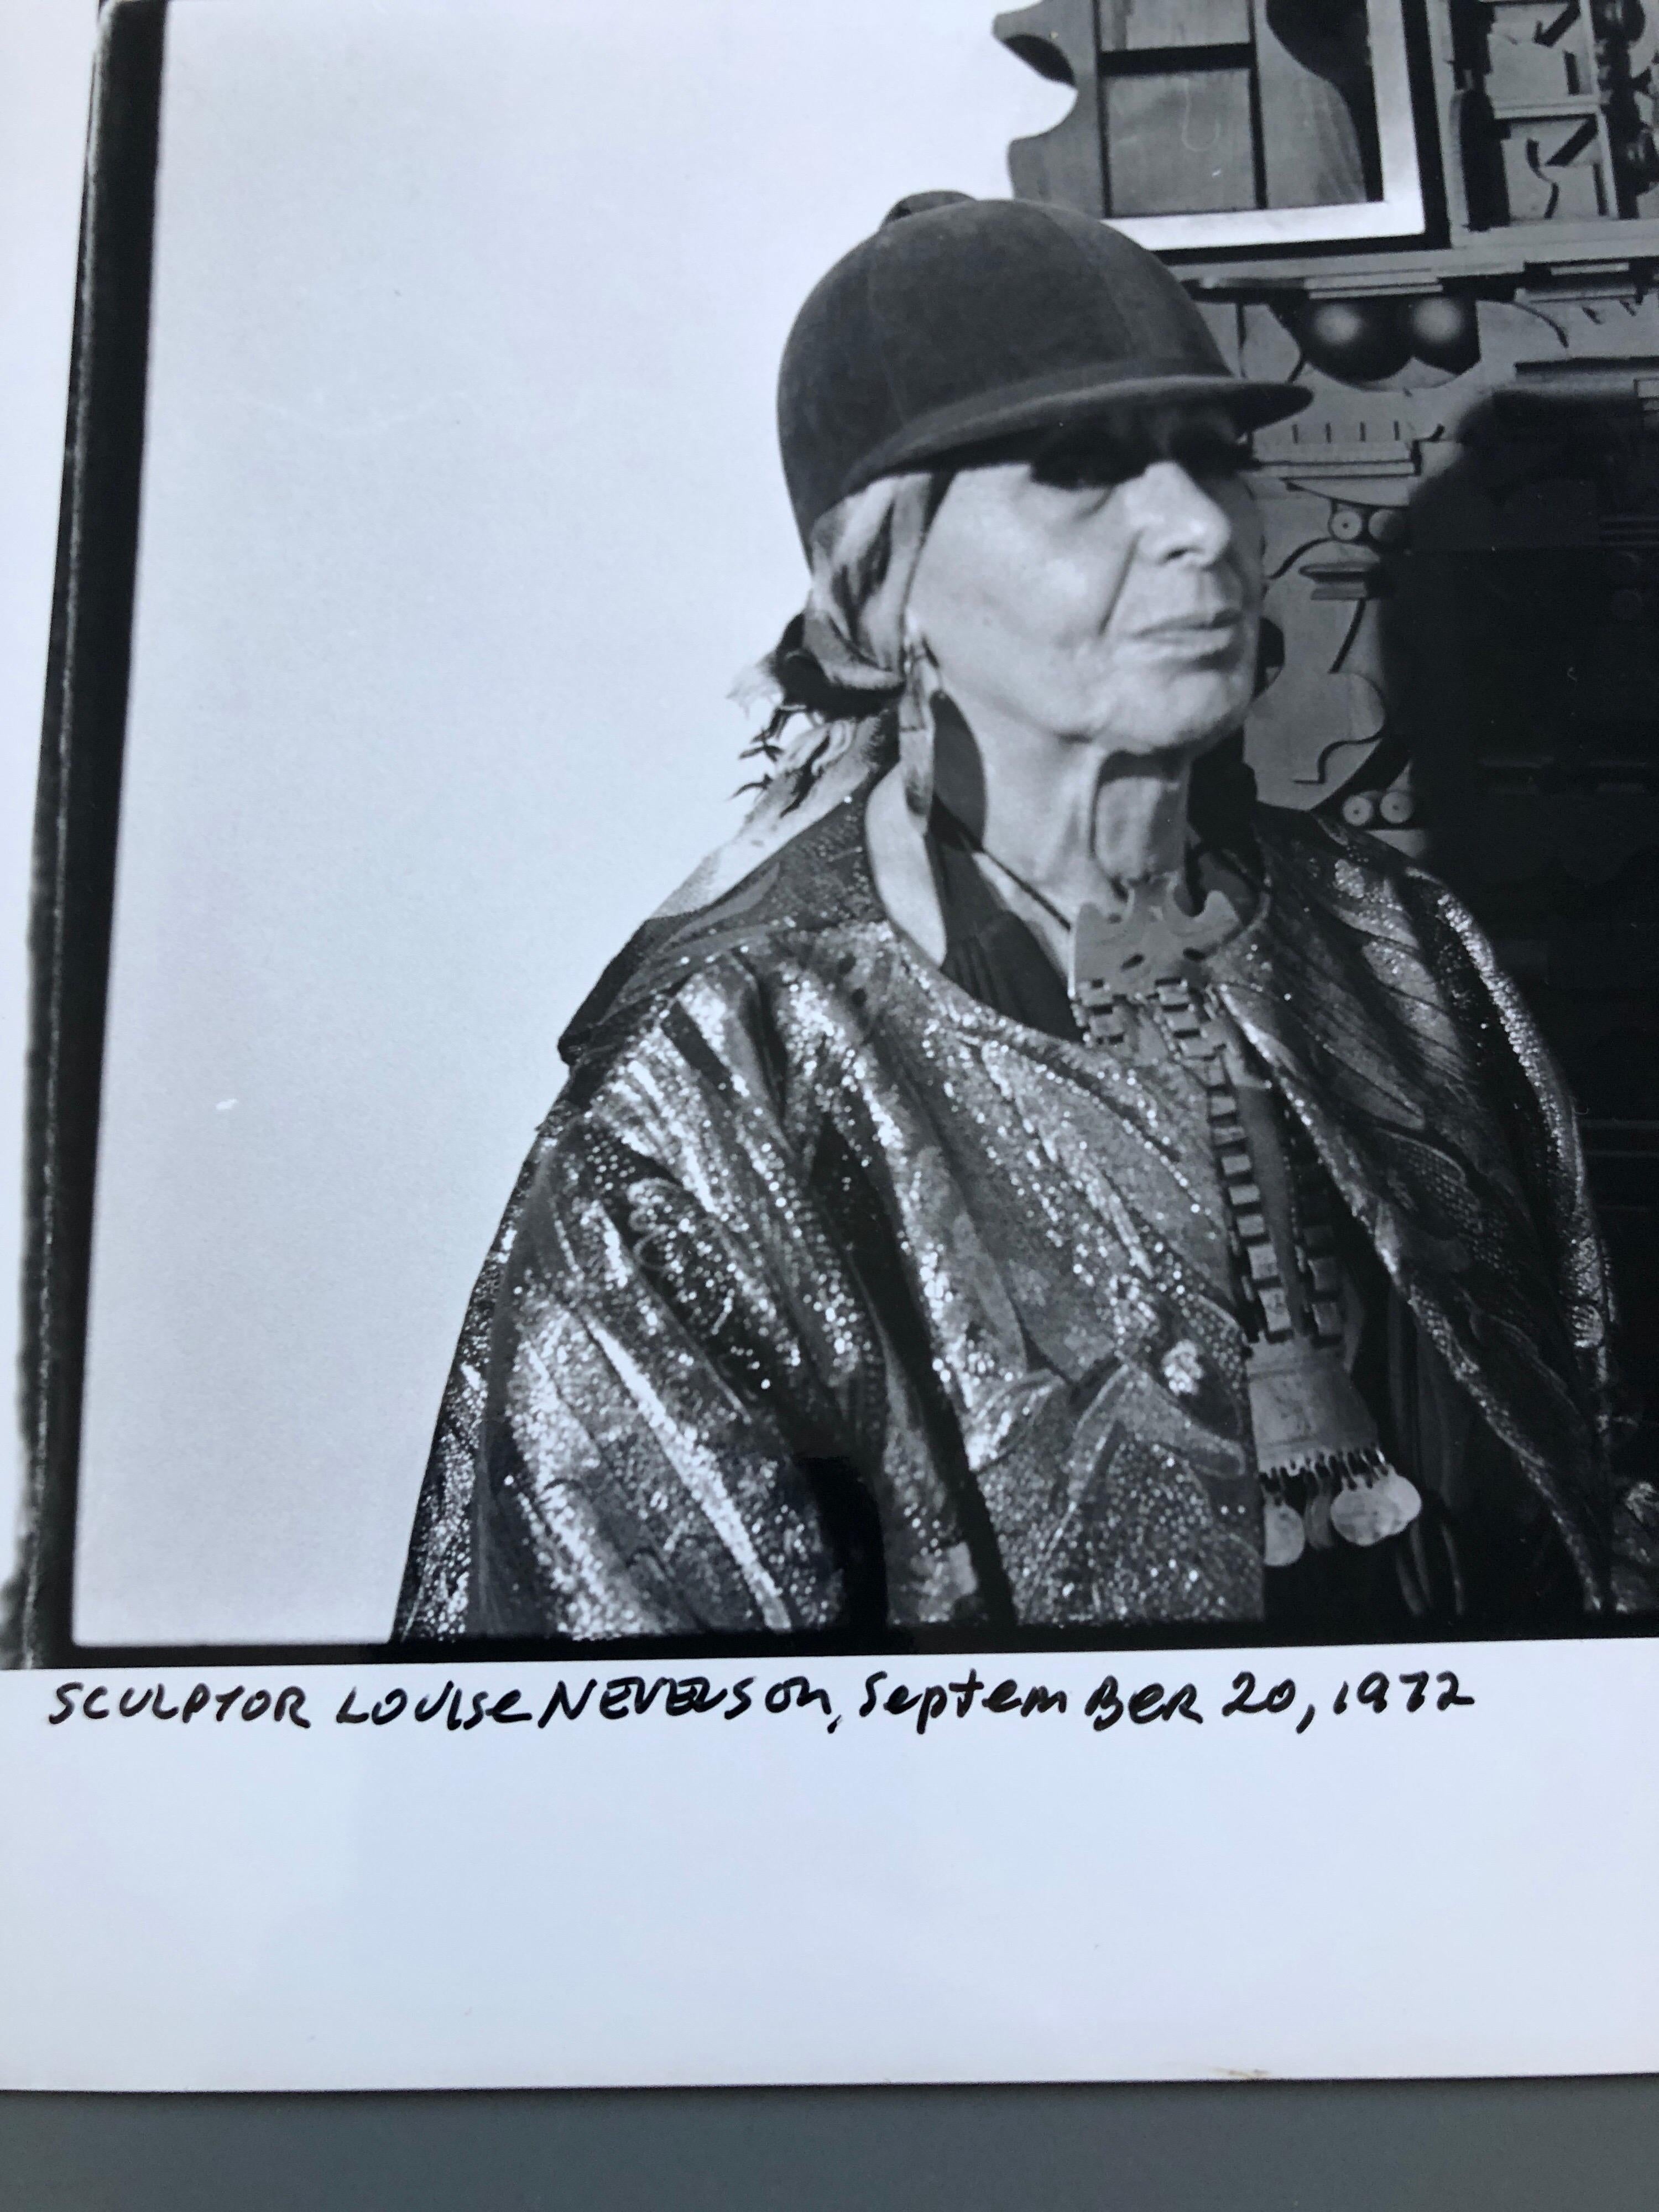 signiert in Tinte und mit Fotografenstempel verso und handschriftlichem Titel.

Louise Nevelson (23. September 1899 - 17. April 1988) war eine amerikanische Bildhauerin, die für ihre monumentalen, monochromen hölzernen Wandarbeiten und Skulpturen im